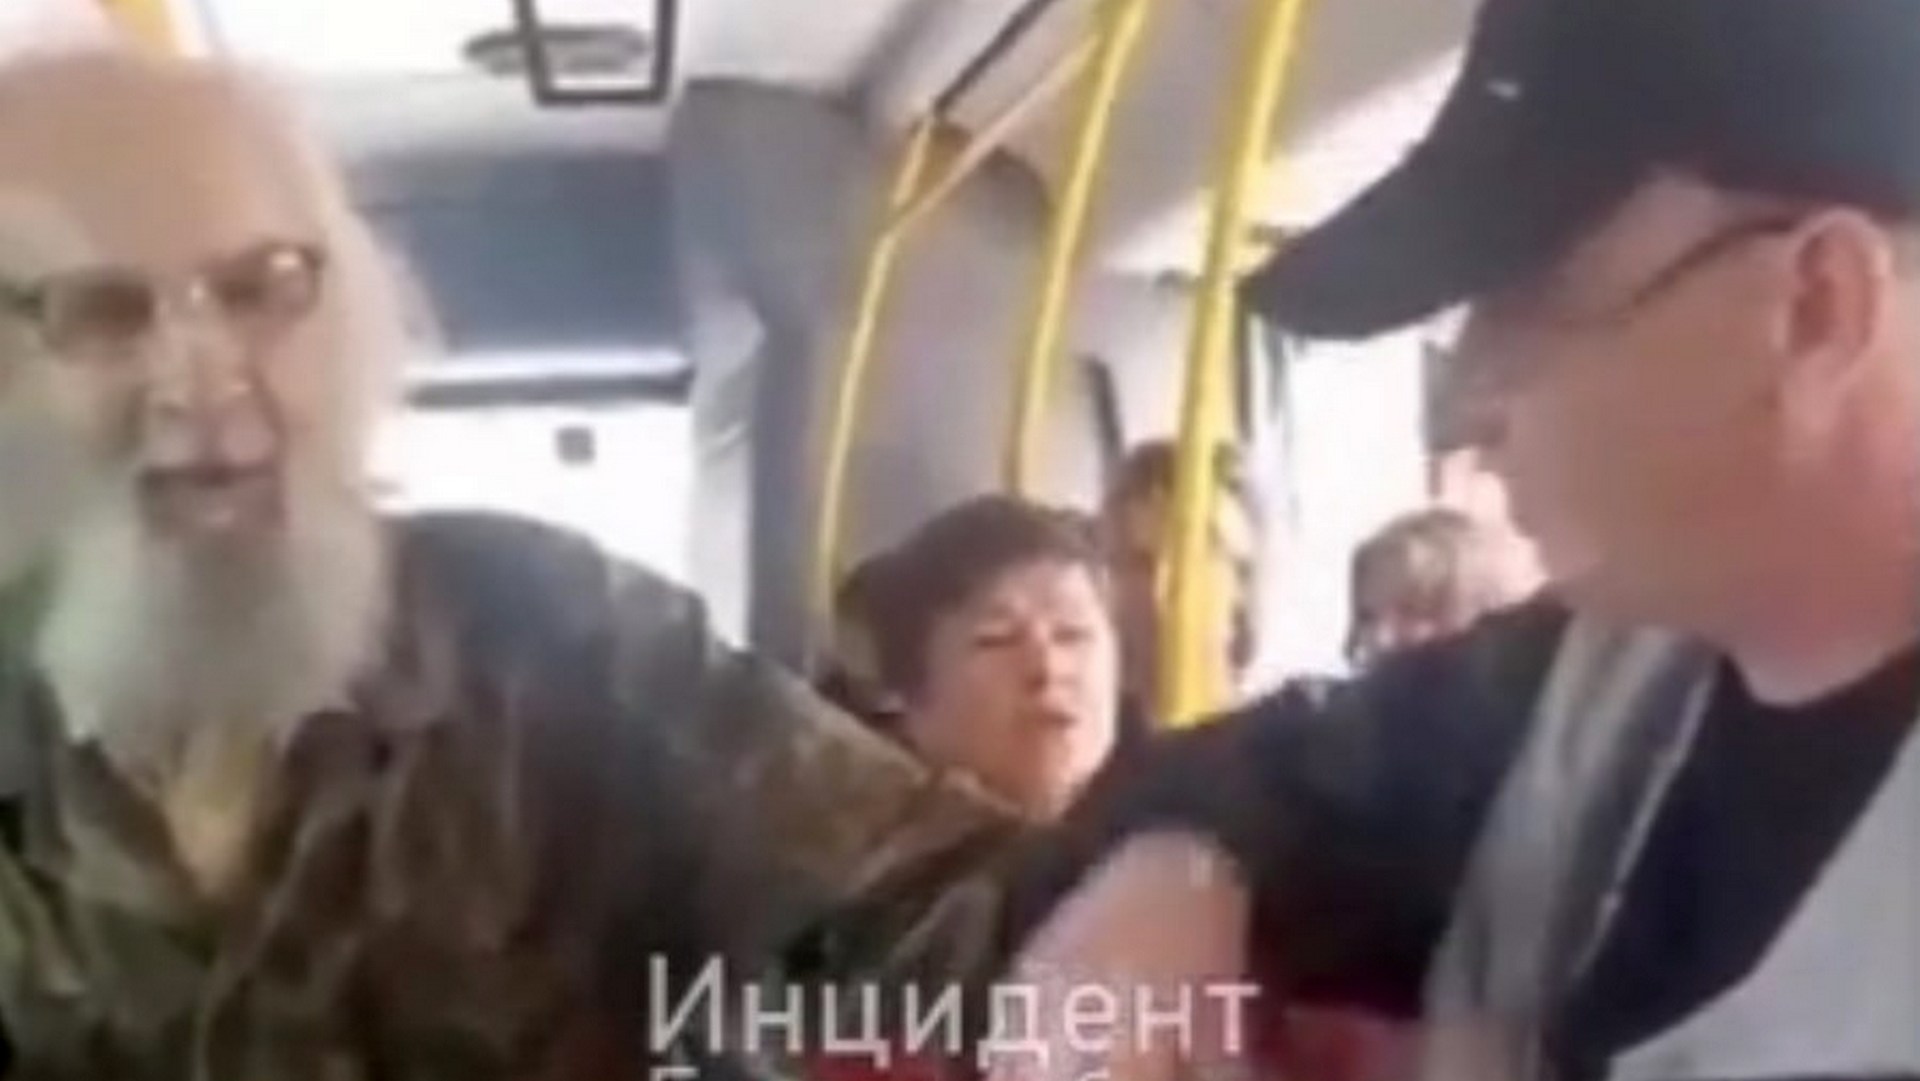 Седая борода не убедила: в Екатеринбурге контролеры выгнали из автобуса 85-летнего пенсионера (видео)